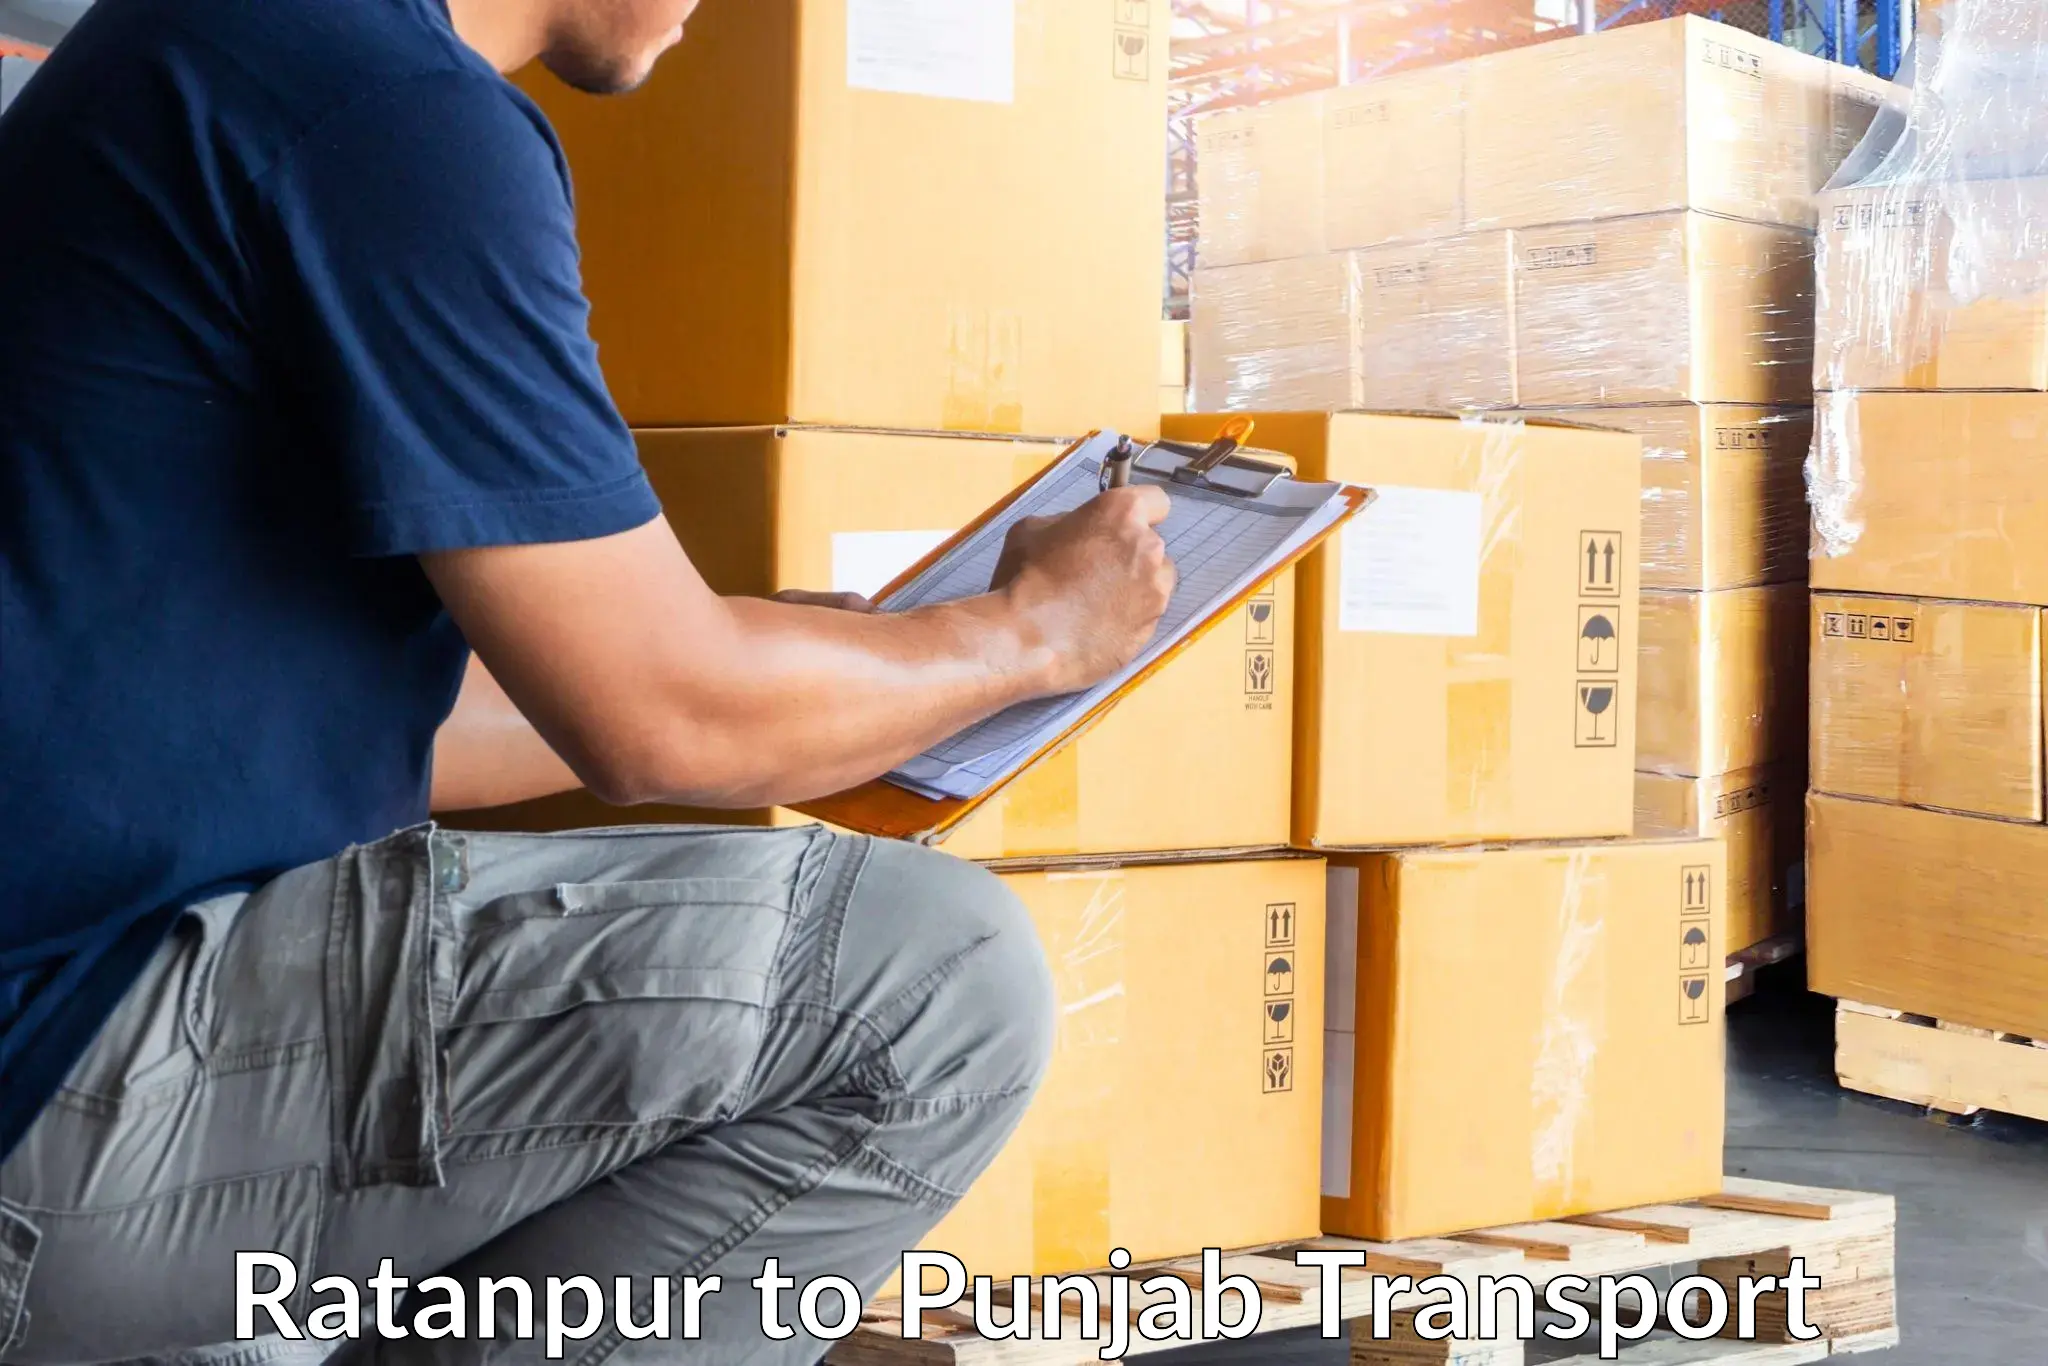 Bike shipping service Ratanpur to Punjab